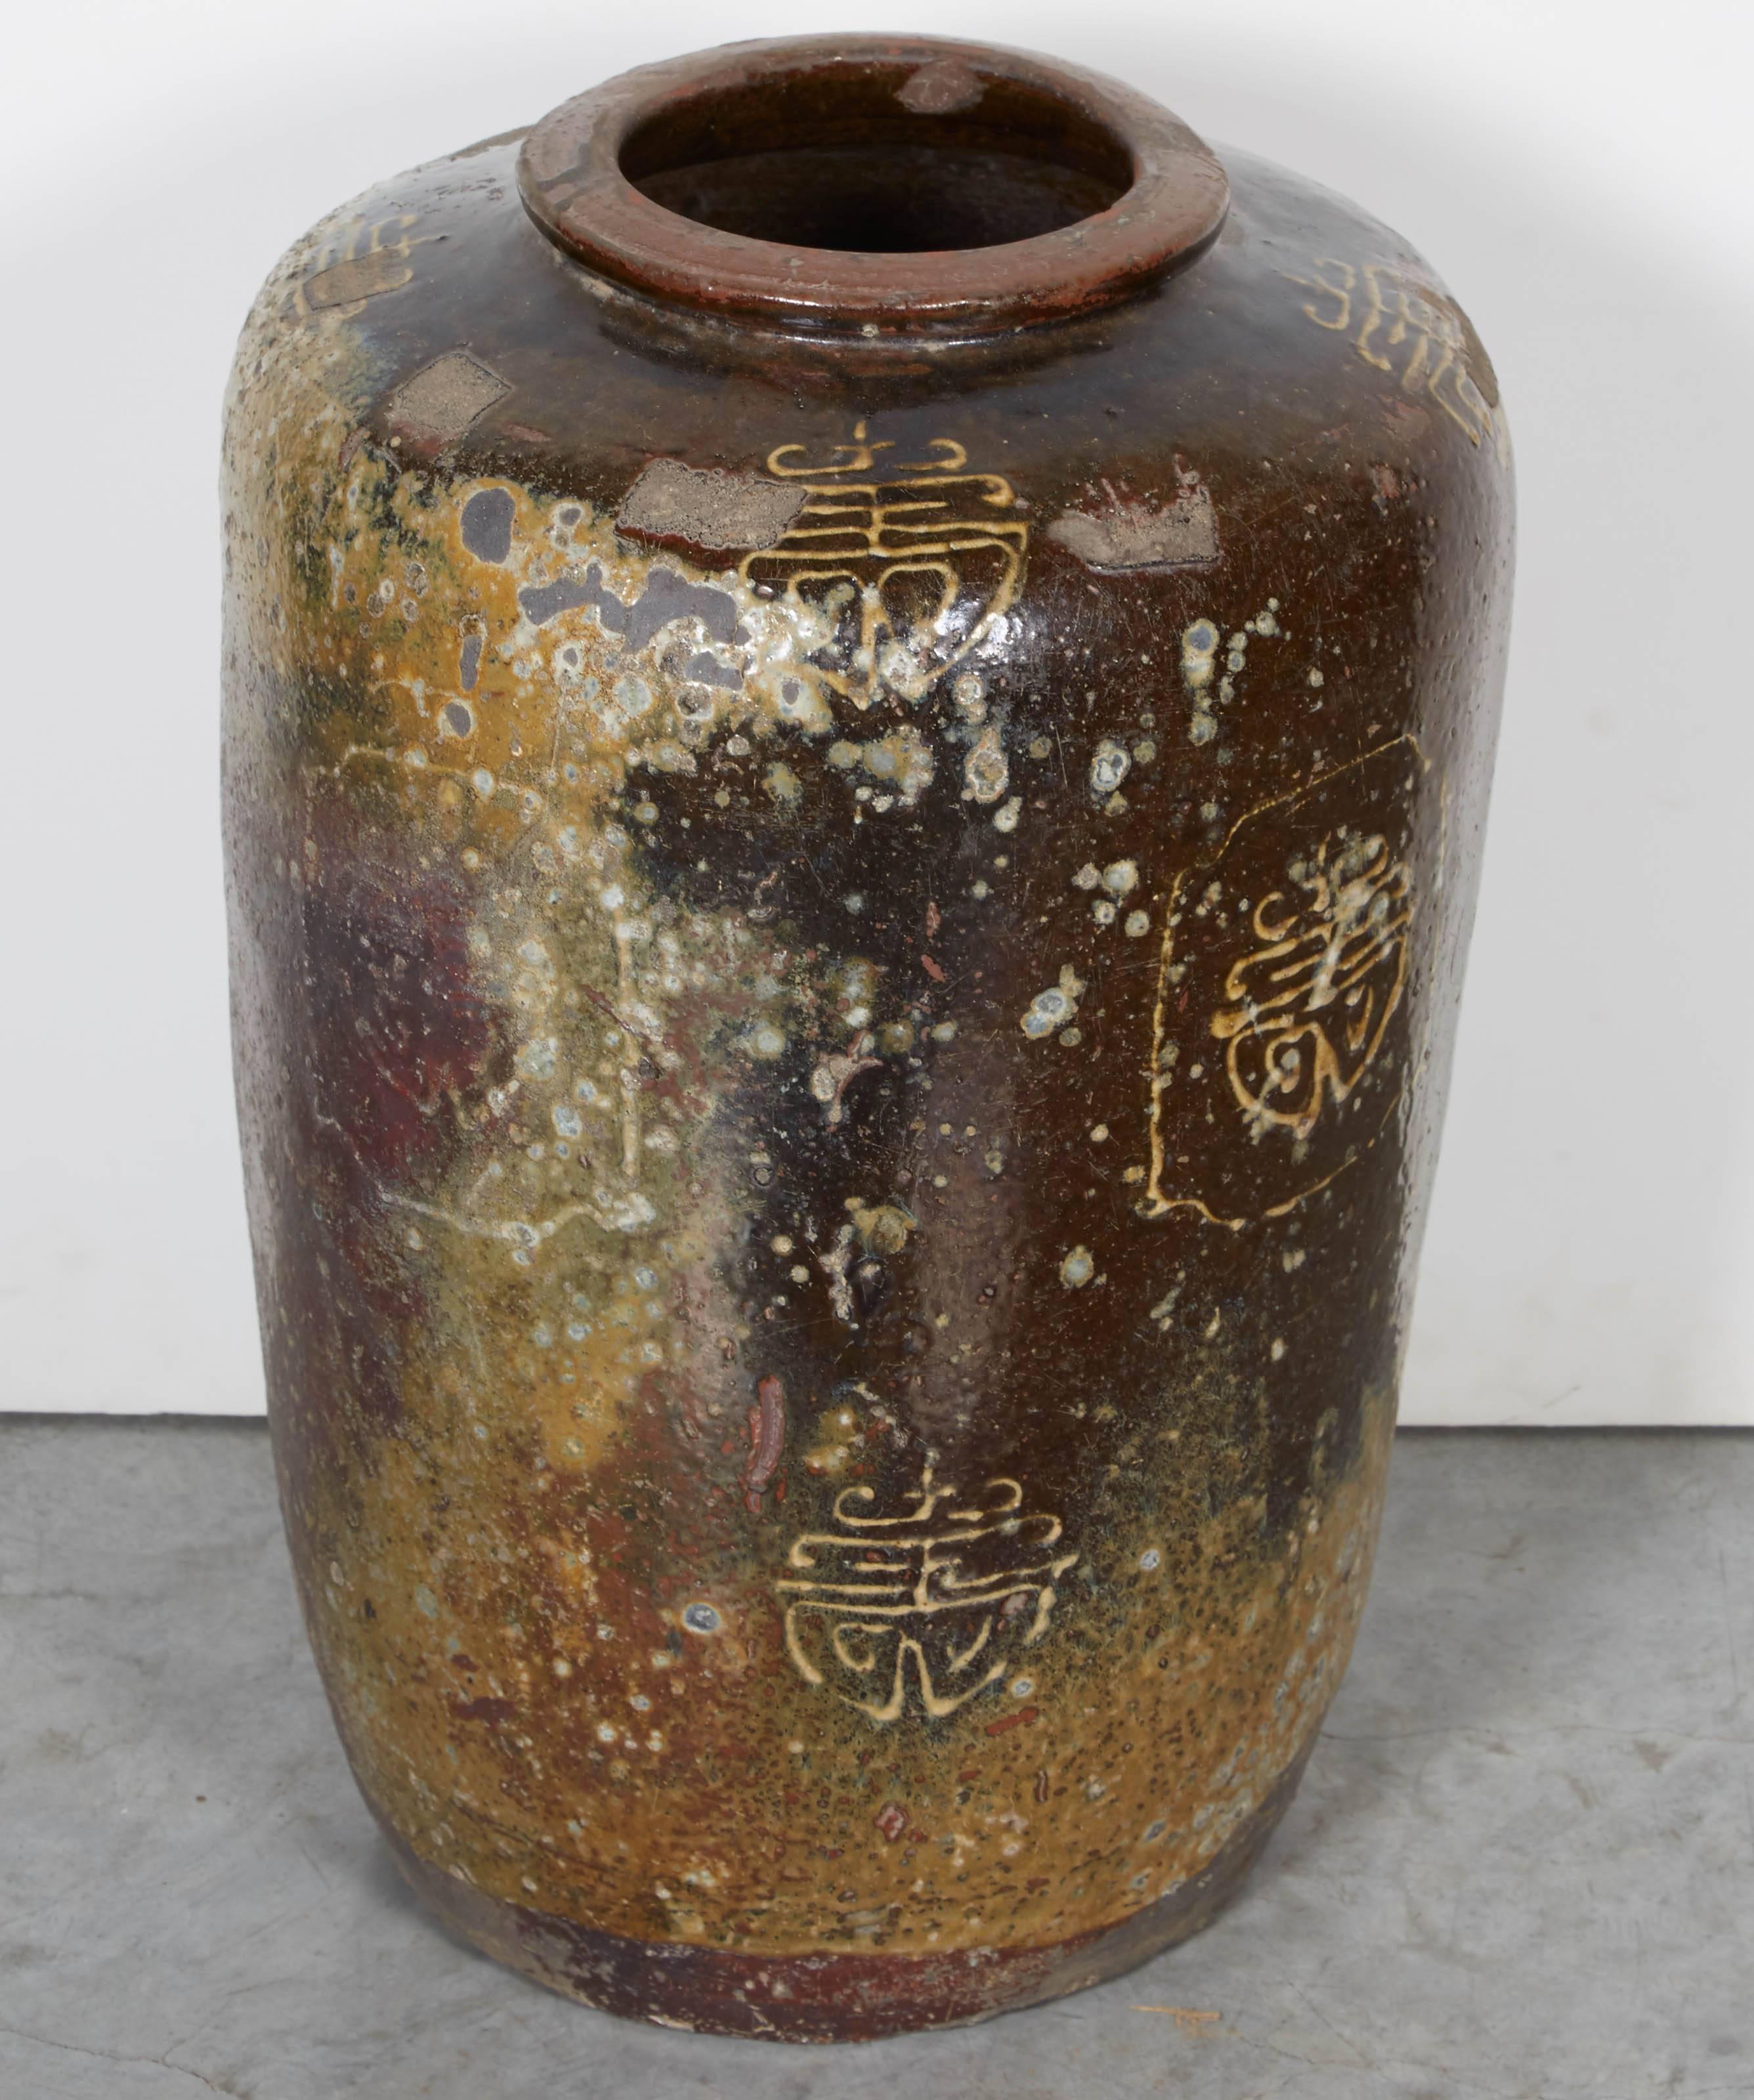 Ein schön verwitterter Weinkrug mit chinesischen Schriftzeichen. Aus der Provinz Hunan, ca. 1920. Mehrere verfügbar. 
CR699.